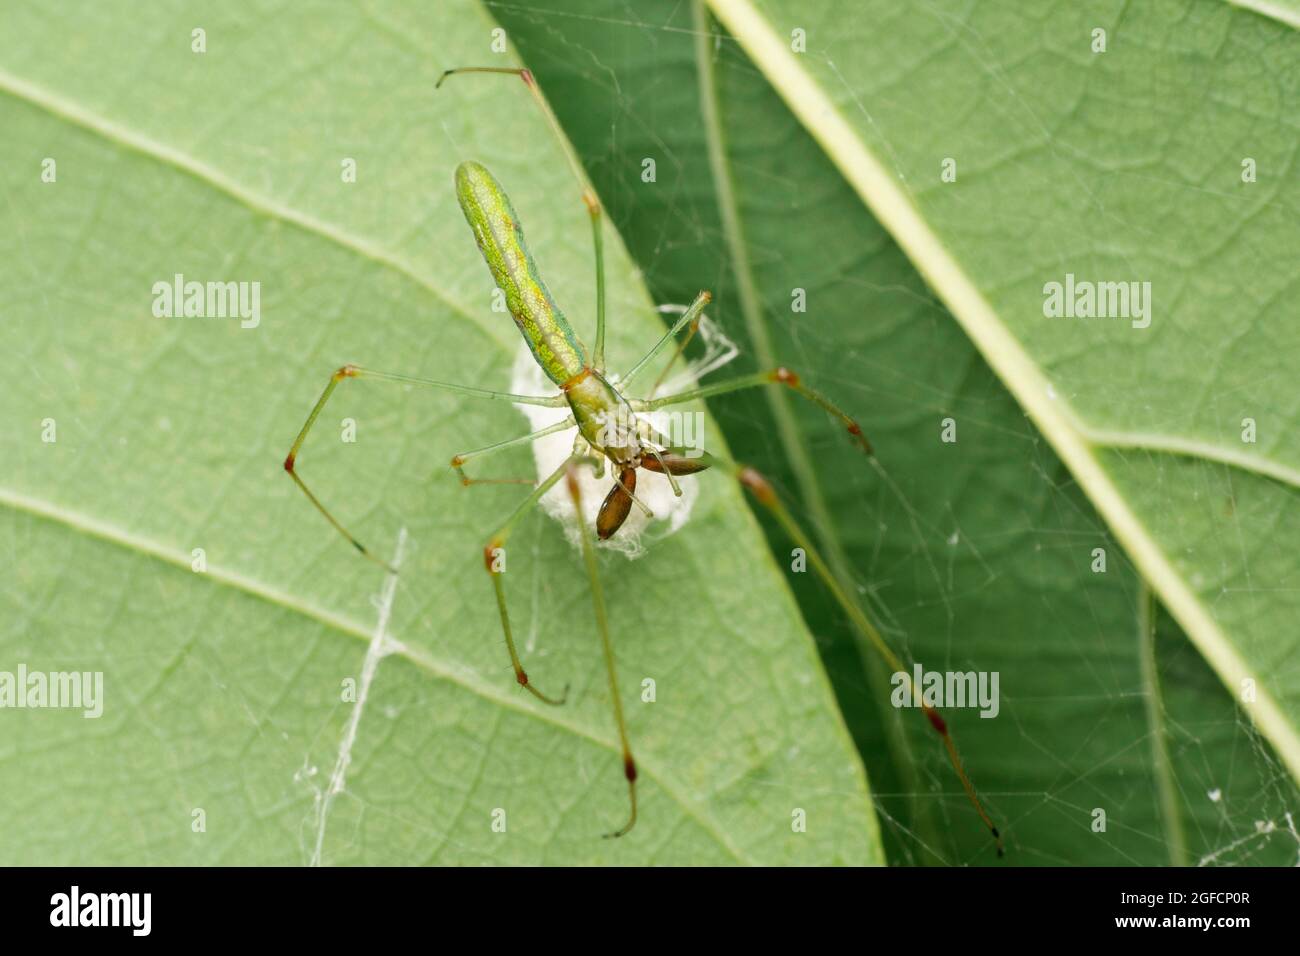 Green Long jawed spider, Tetragnatha guatemalensis, Satara, Maharashtra, India Stock Photo